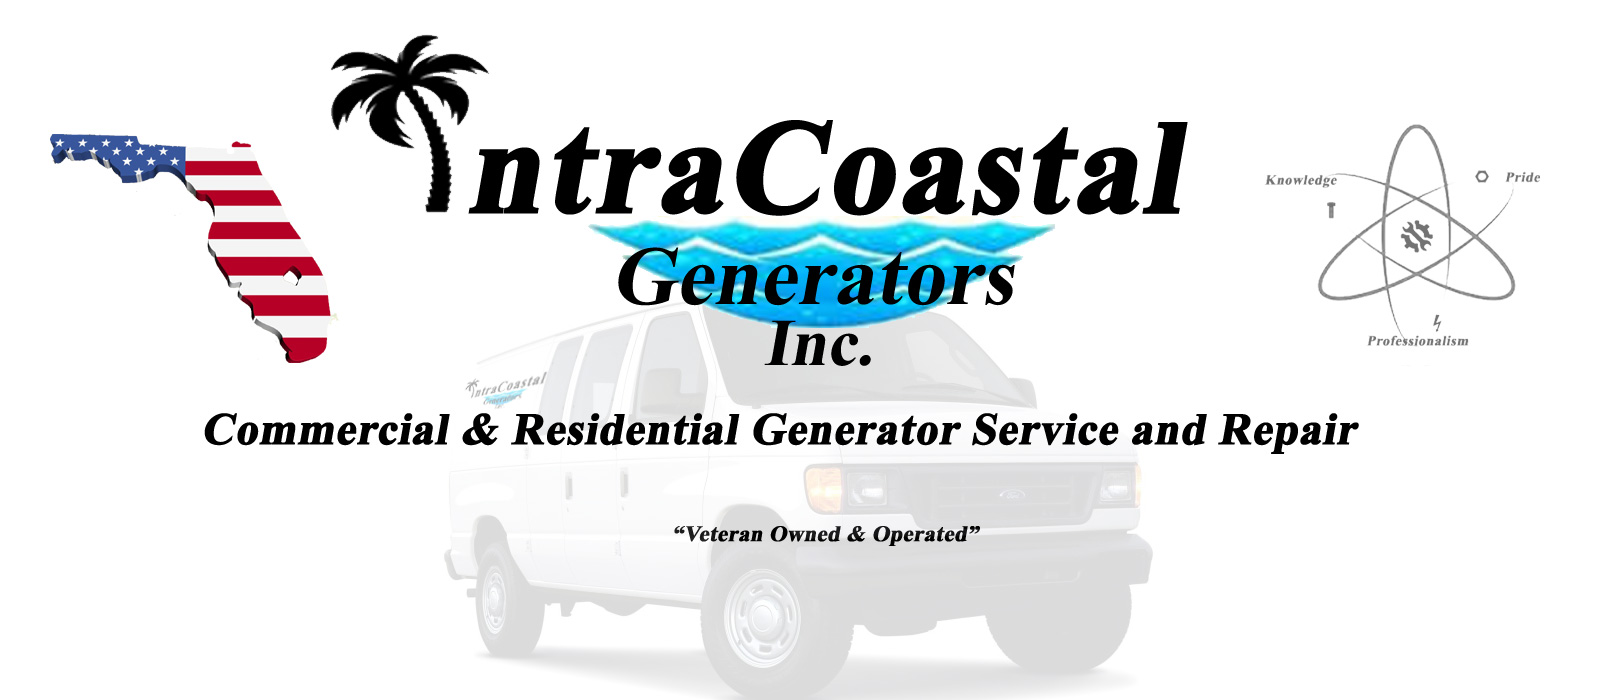 Intracoastal Generators Inc.